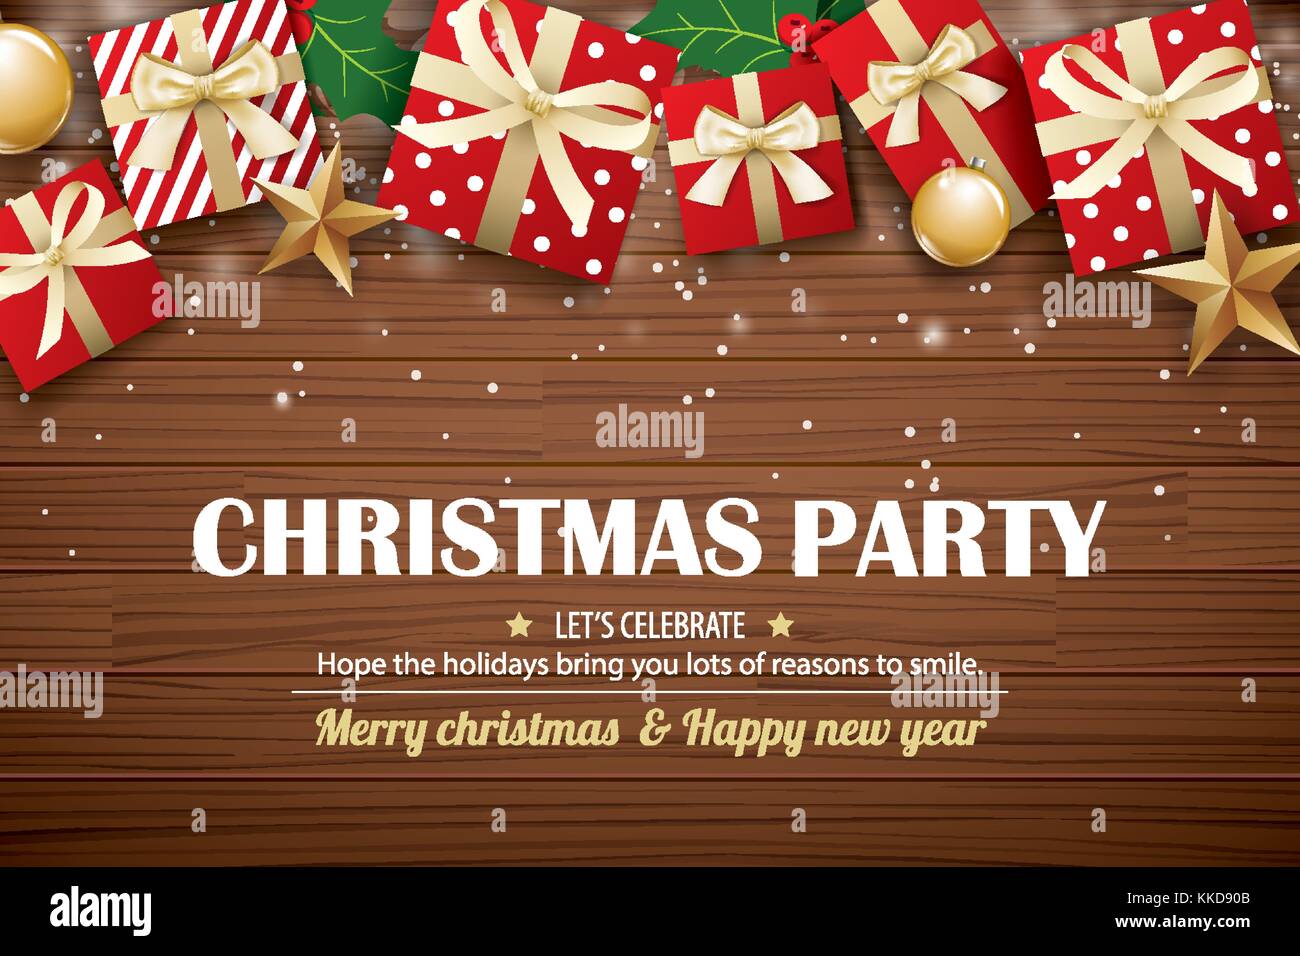 Weihnachtsfeier Plakat Hintergrund design Vorlage. Typografie und Geschenkbox auf braunem Holz. Stock Vektor